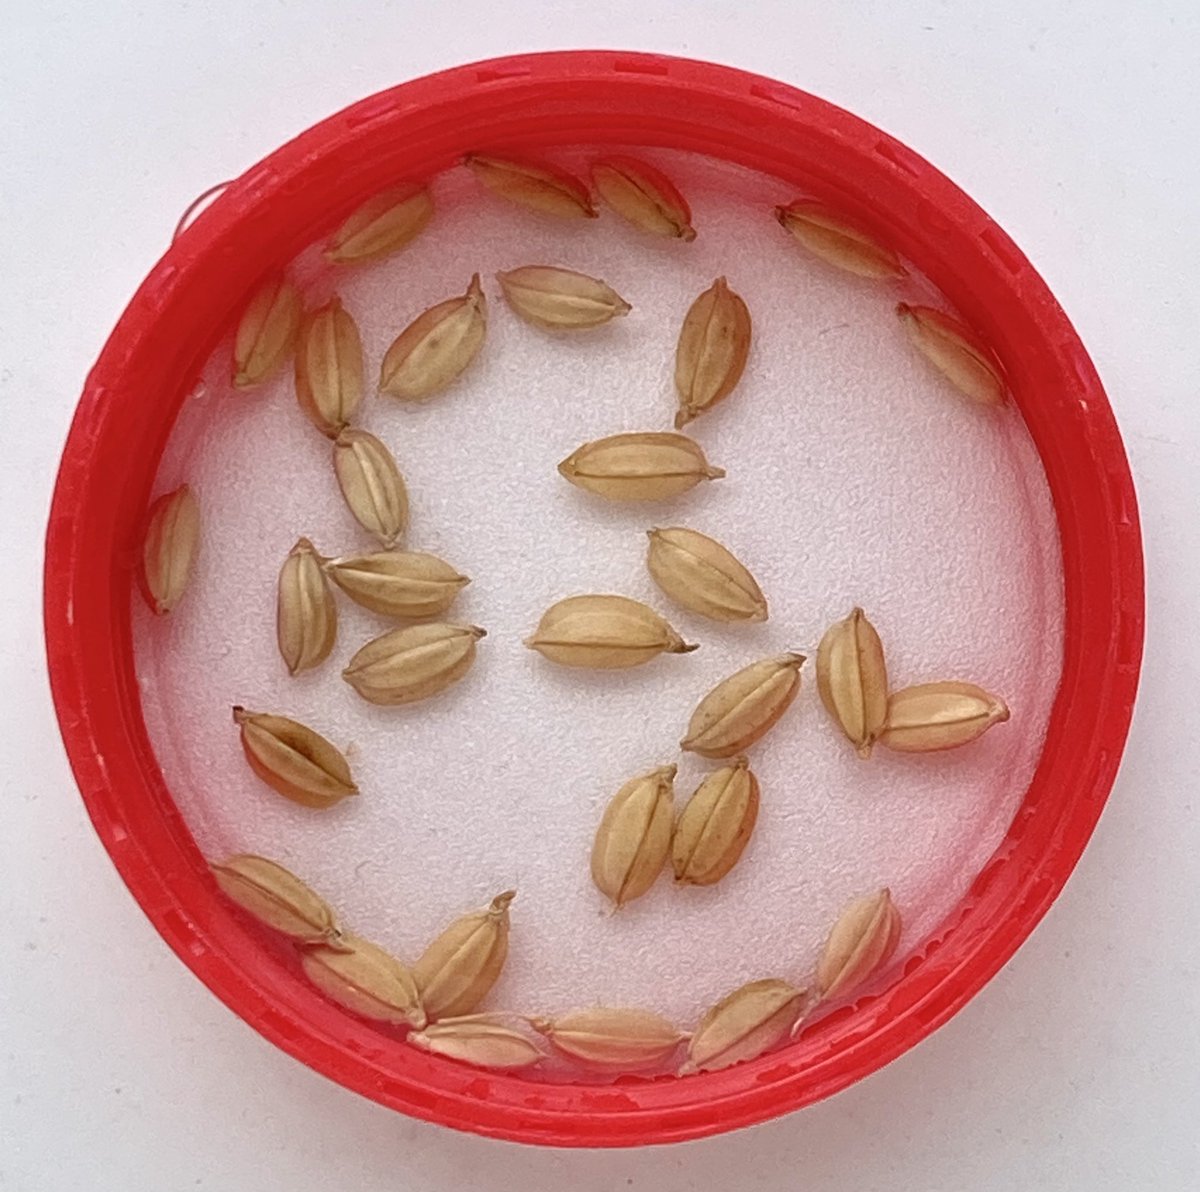 「種もみを水につける #バケツ稲チャレンジ」|はちまるのイラスト